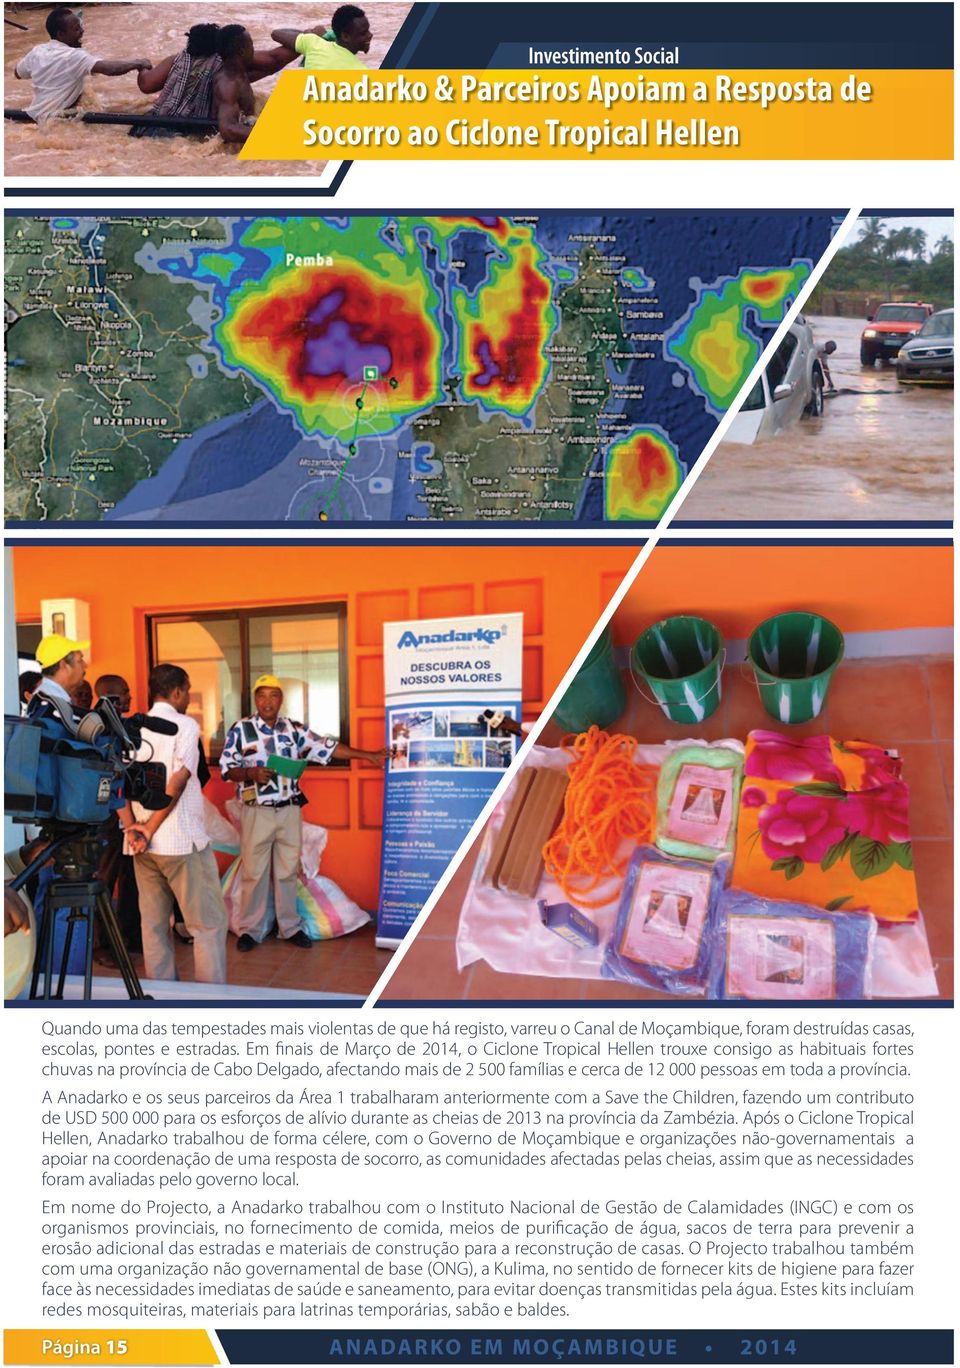 Em finais de Março de 2014, o Ciclone Tropical Hellen trouxe consigo as habituais fortes chuvas na província de Cabo Delgado, afectando mais de 2 500 famílias e cerca de 12 000 pessoas em toda a